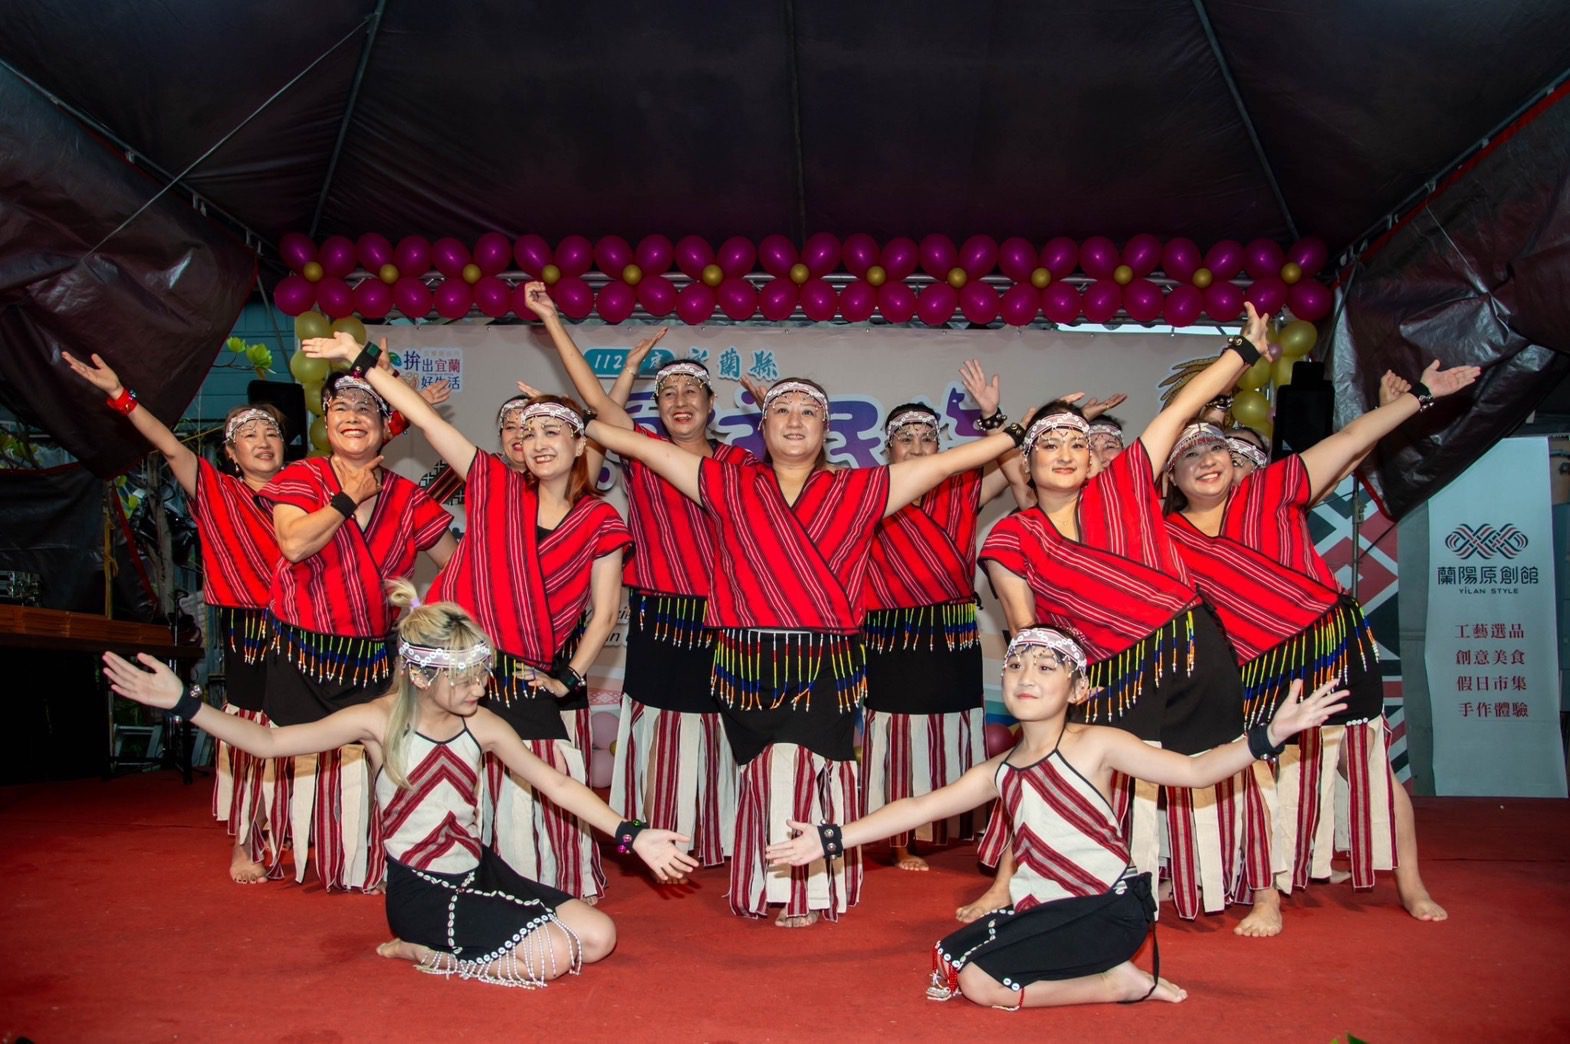 宜蘭縣原住民族部落大學教學成果展  傳統原民文化創新呈現